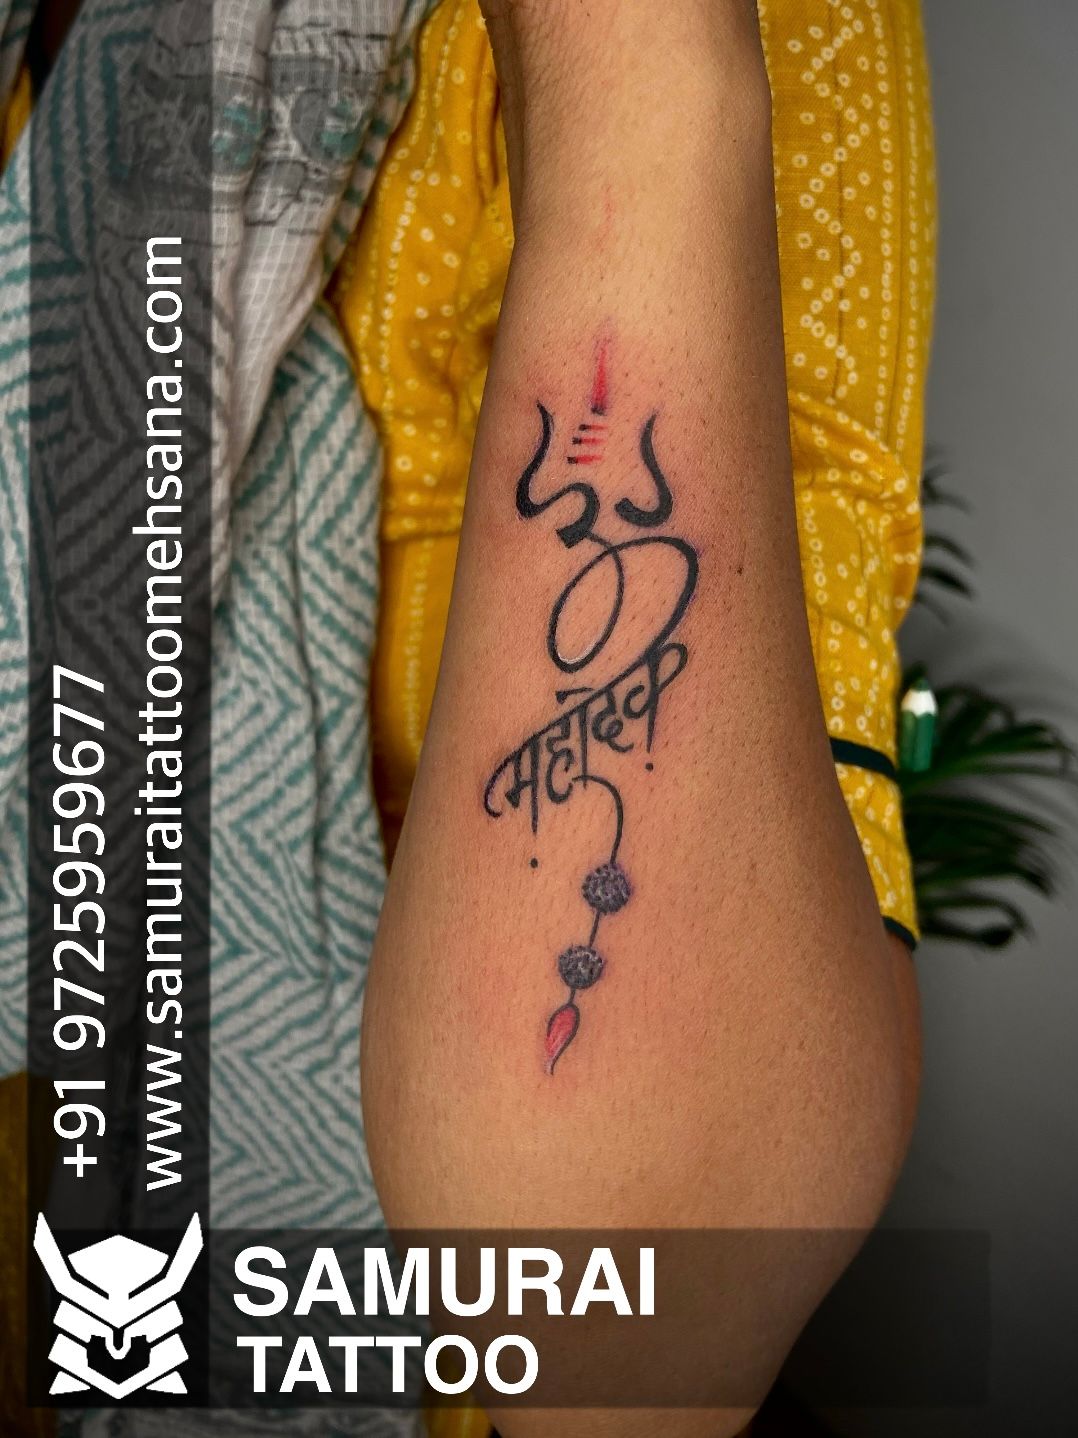 Shiva Tattoo at Rs 1000inch  परमनट टट सरवस परमनट टट बनन क  सरवस  new items  The Skinart Tattooz  Mumbai  ID 21567535012